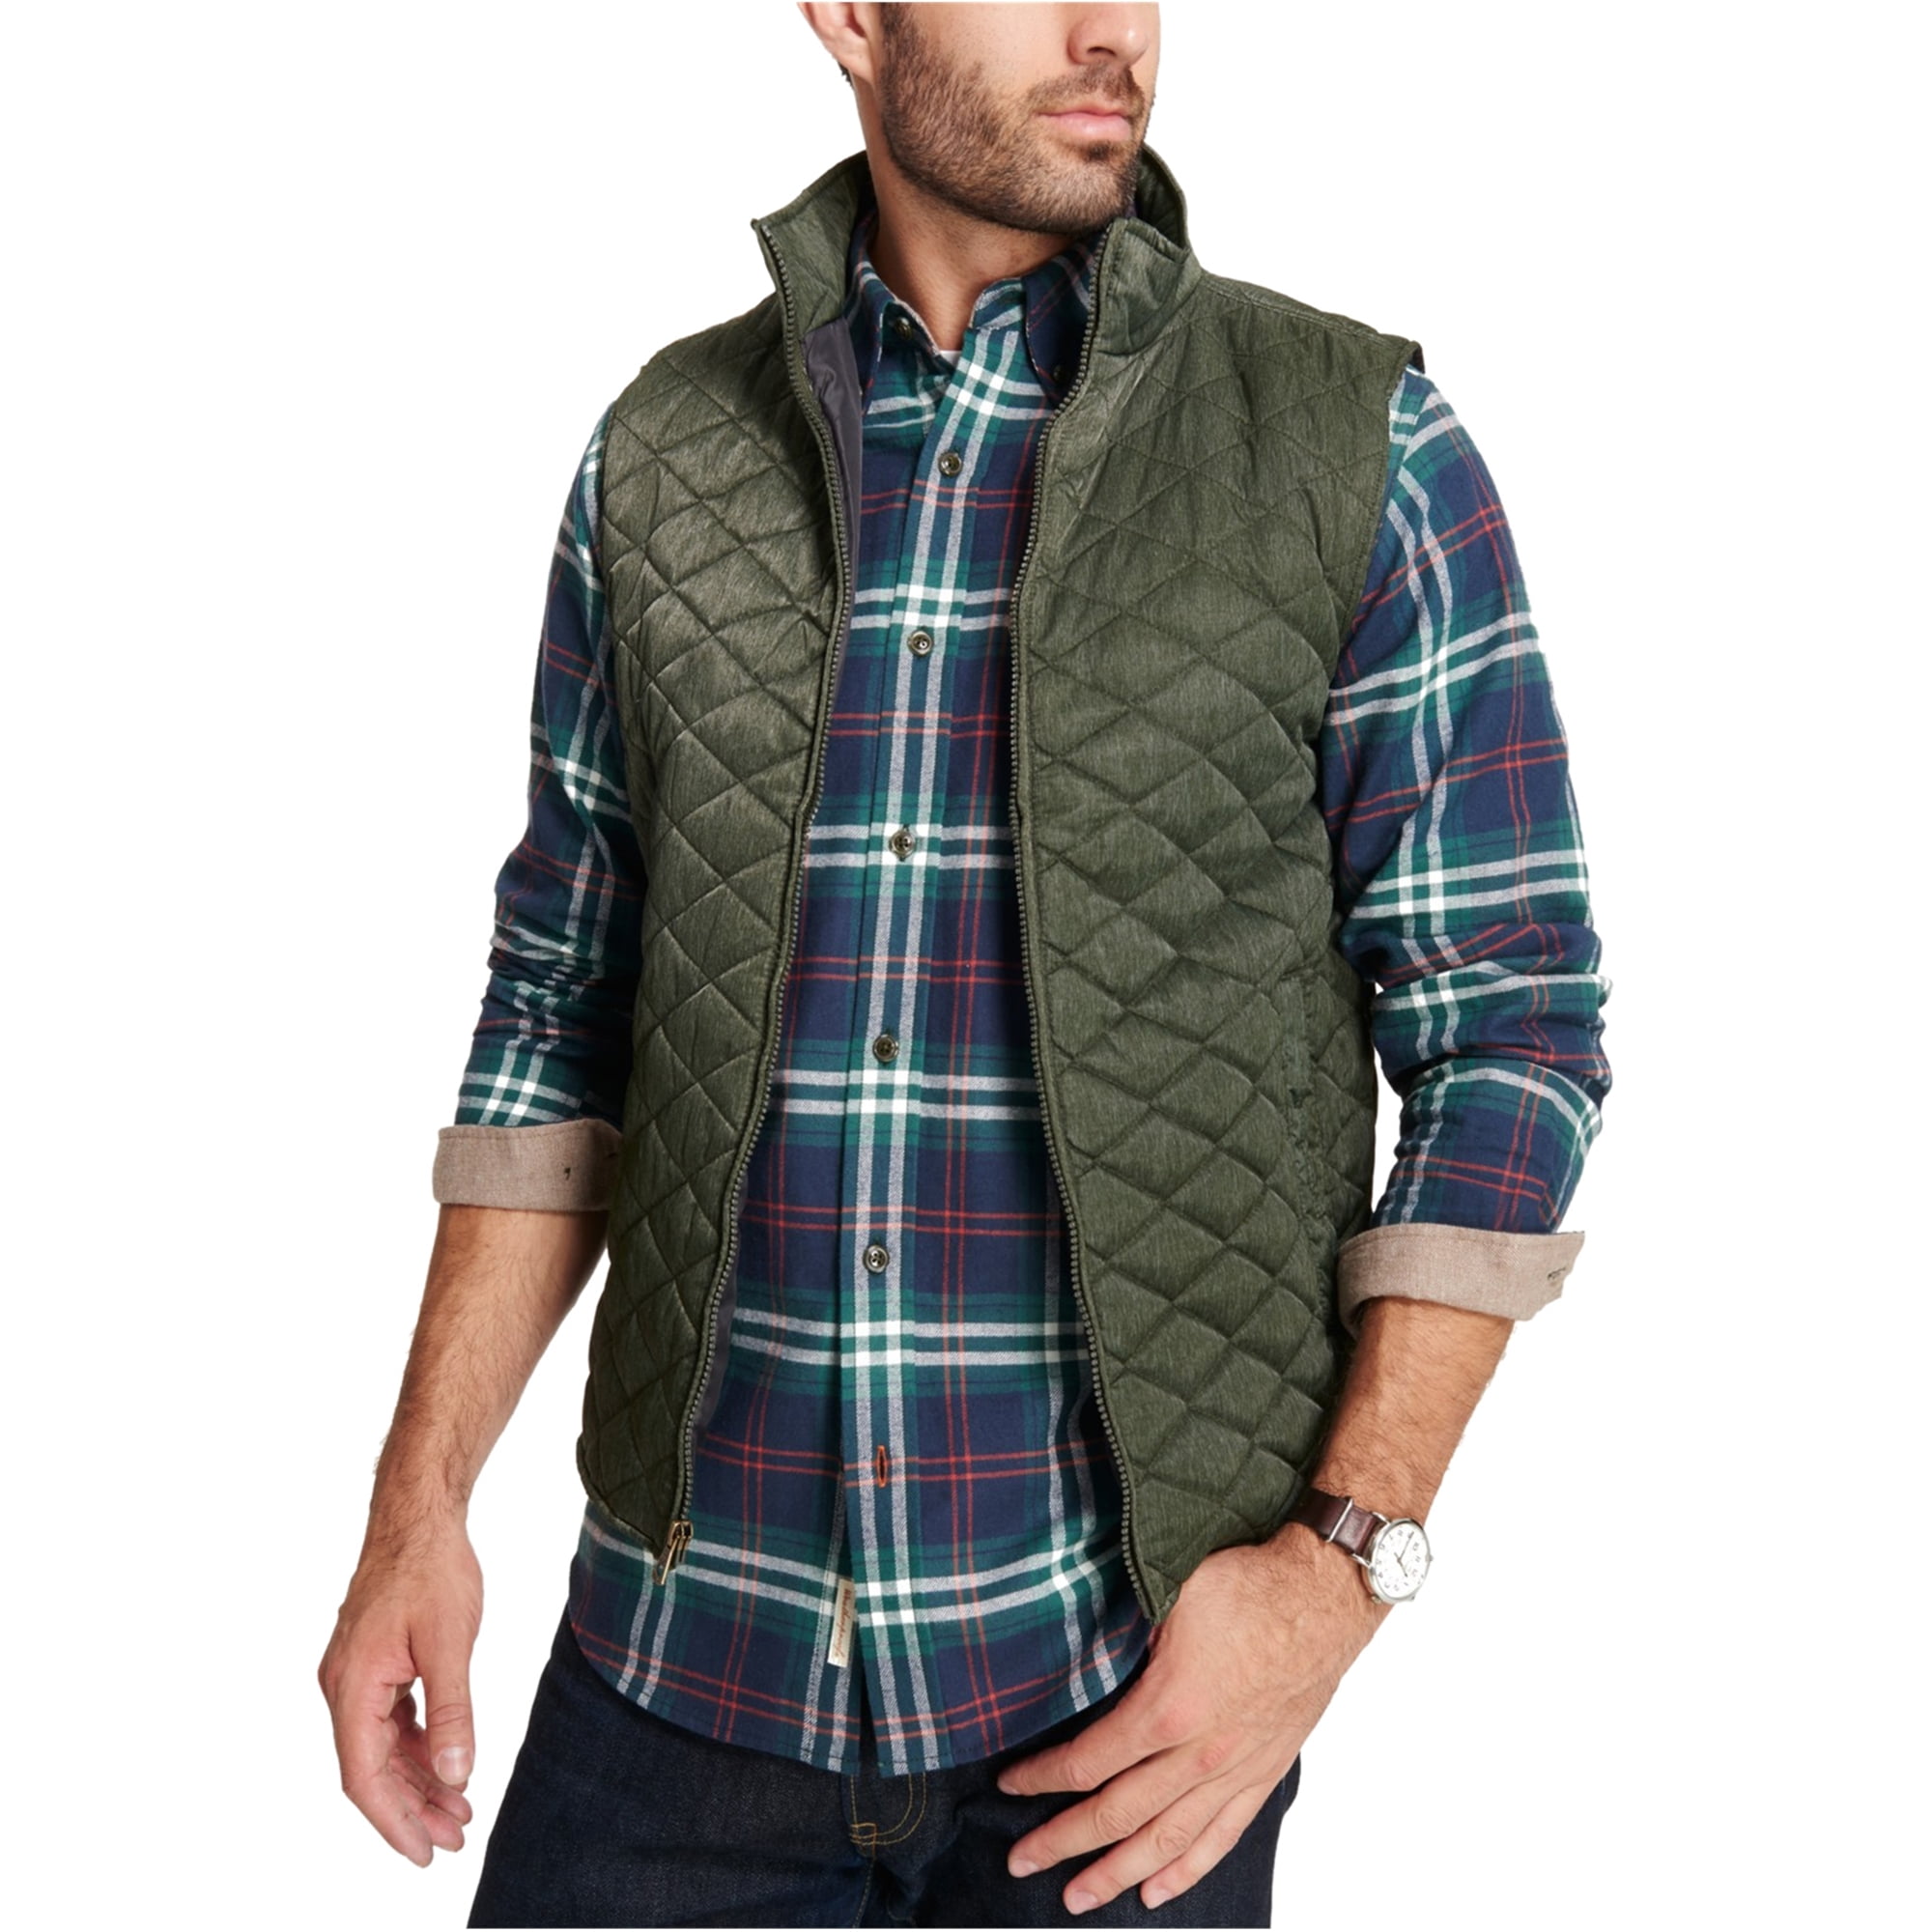 Weatherproof Mens Textured Quilted Vest, Green, Large - Walmart.com